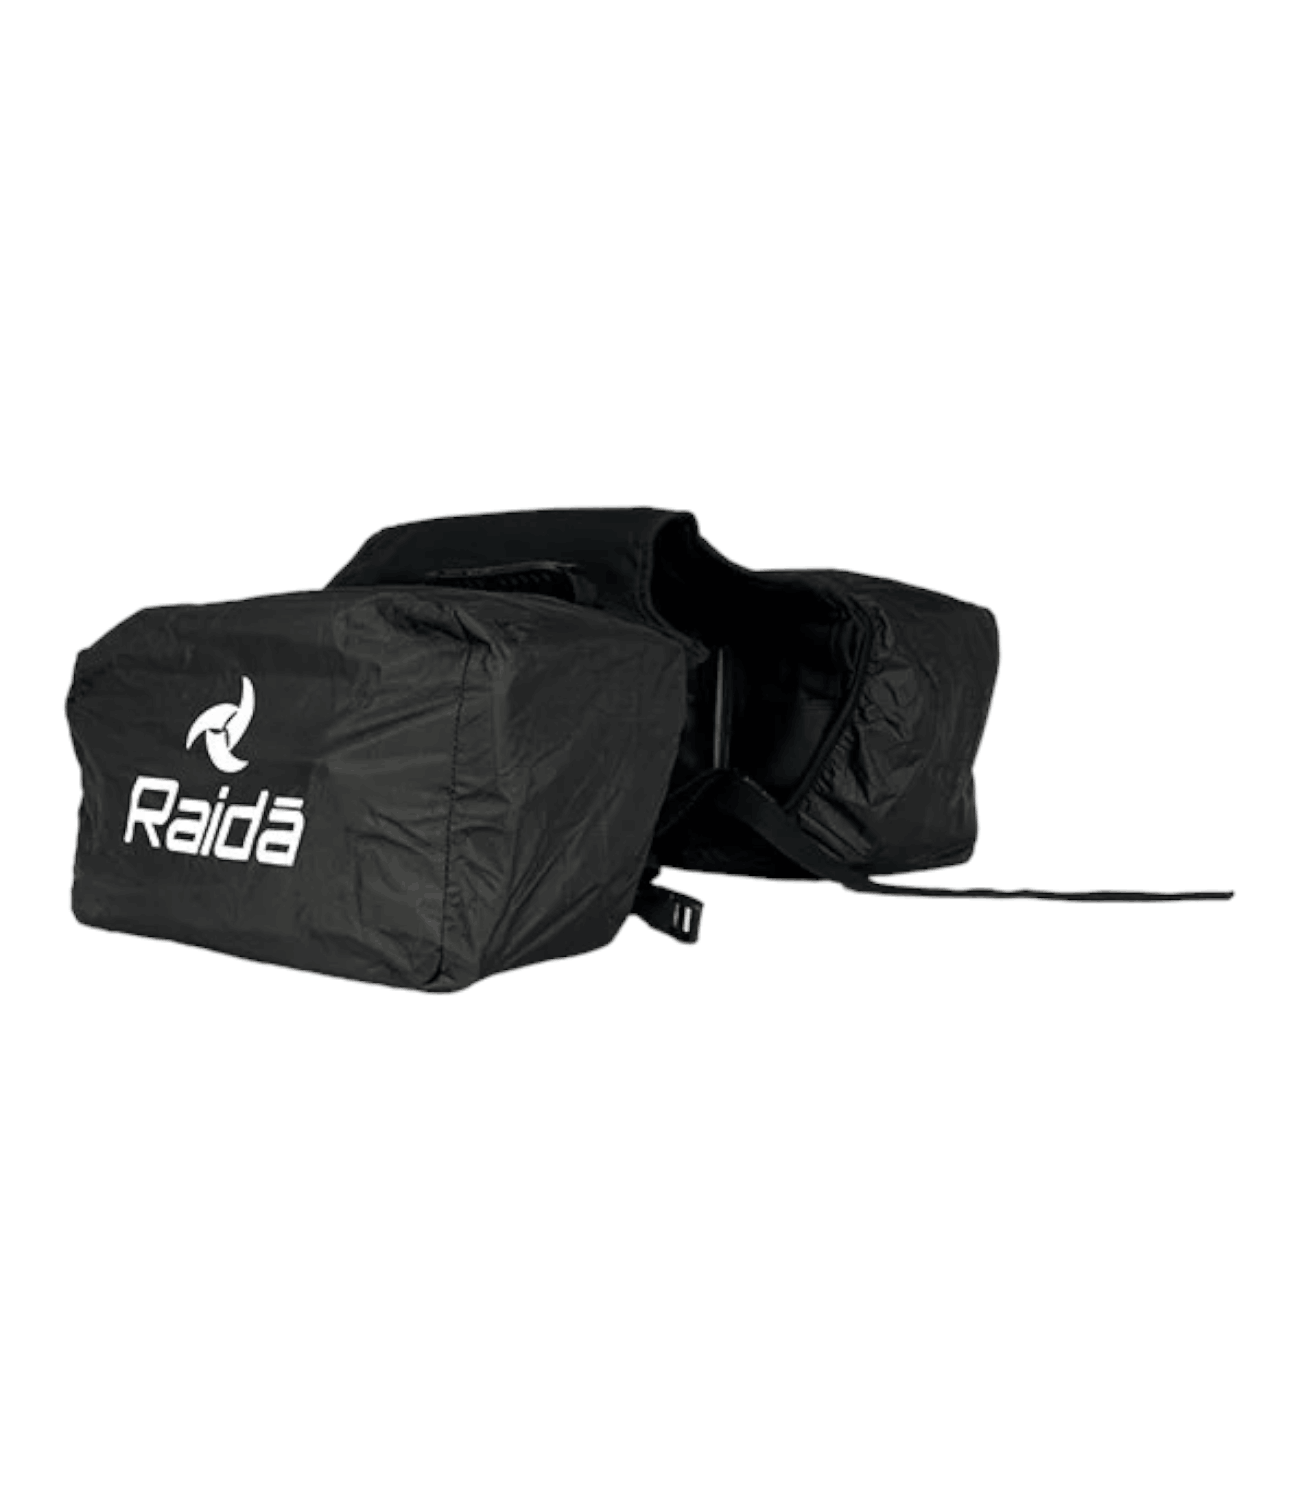 Raida G-Series Bike Saddle Bag